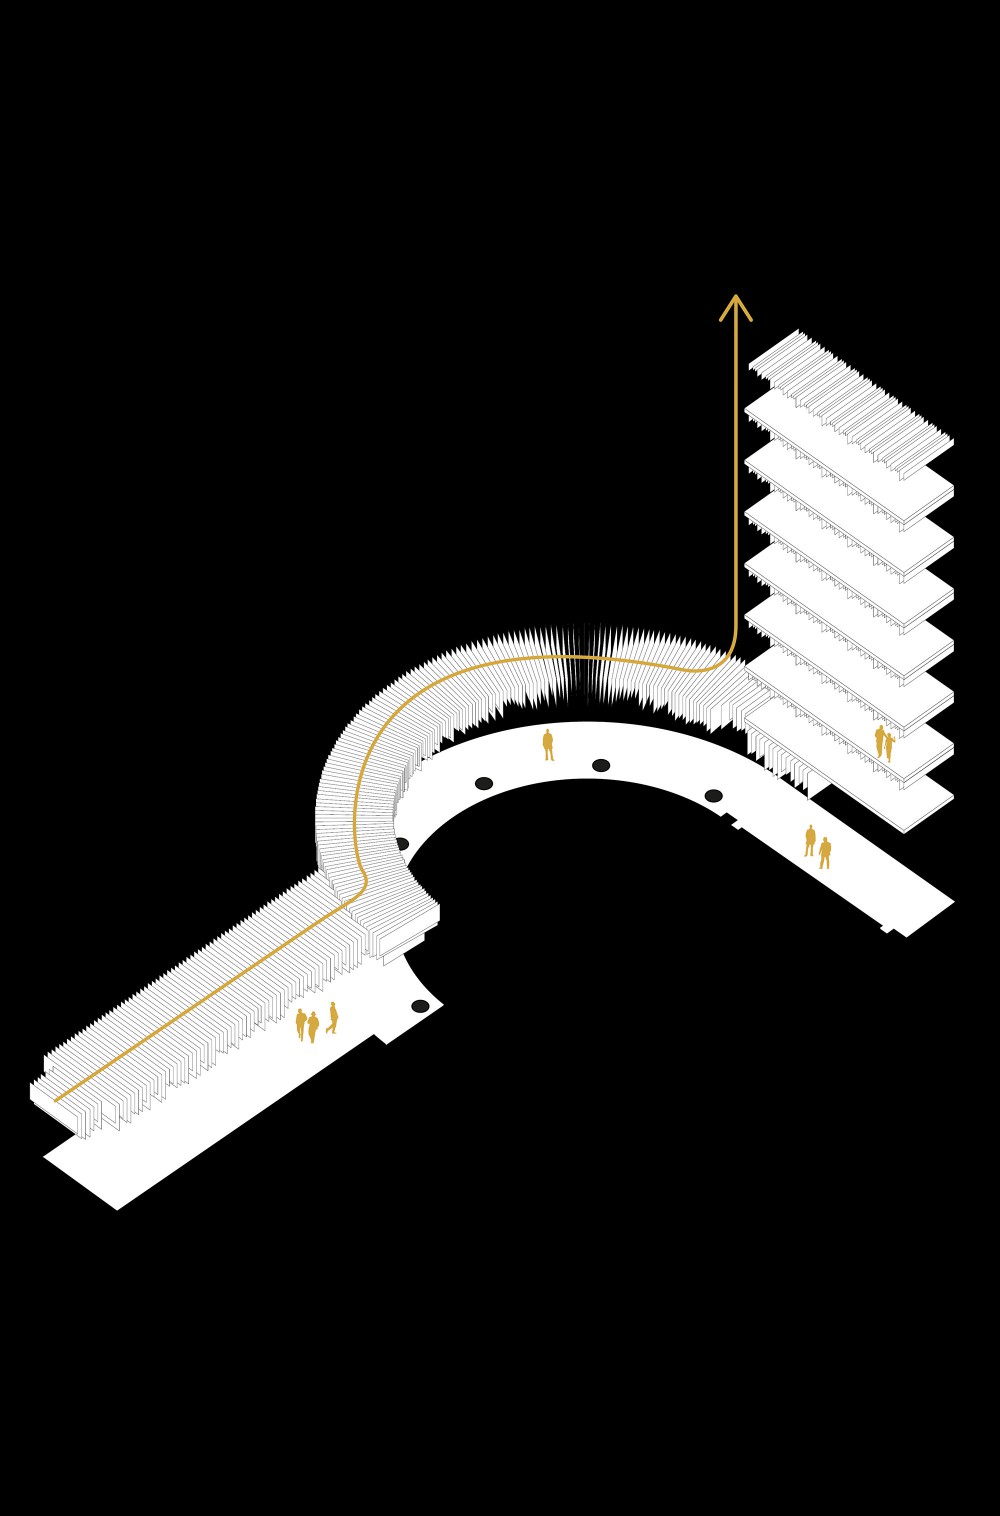 54 Montaigne Facade Intervention / FRESH Architectures